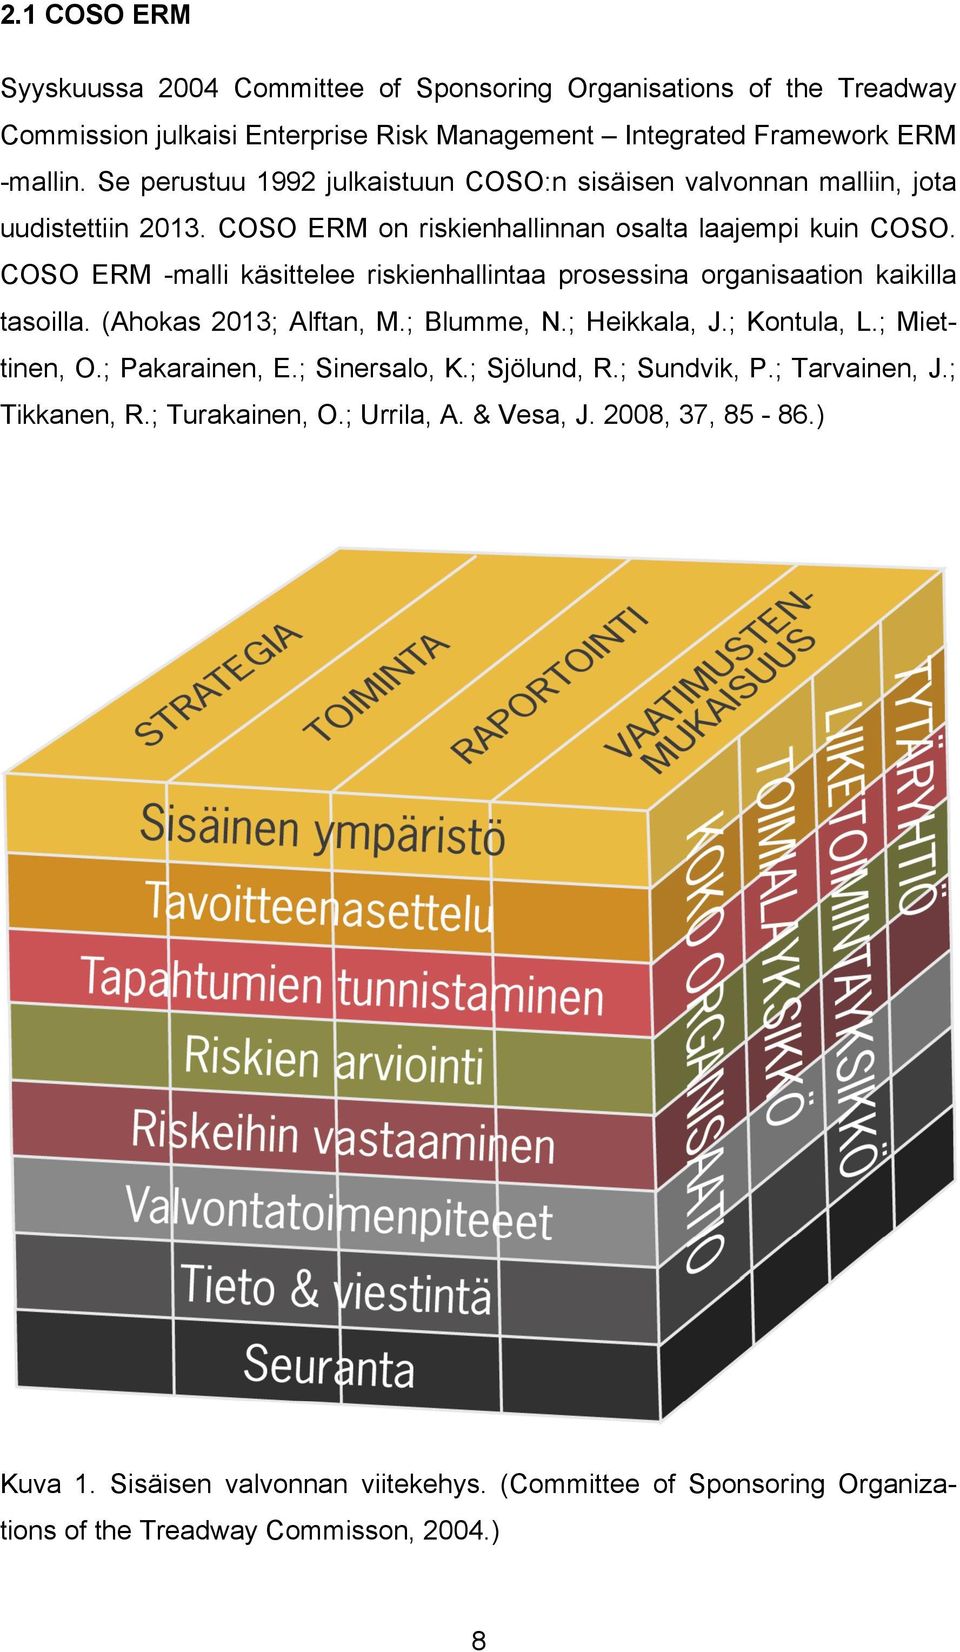 COSO ERM -malli käsittelee riskienhallintaa prosessina organisaation kaikilla tasoilla. (Ahokas 2013; Alftan, M.; Blumme, N.; Heikkala, J.; Kontula, L.; Miettinen, O.; Pakarainen, E.